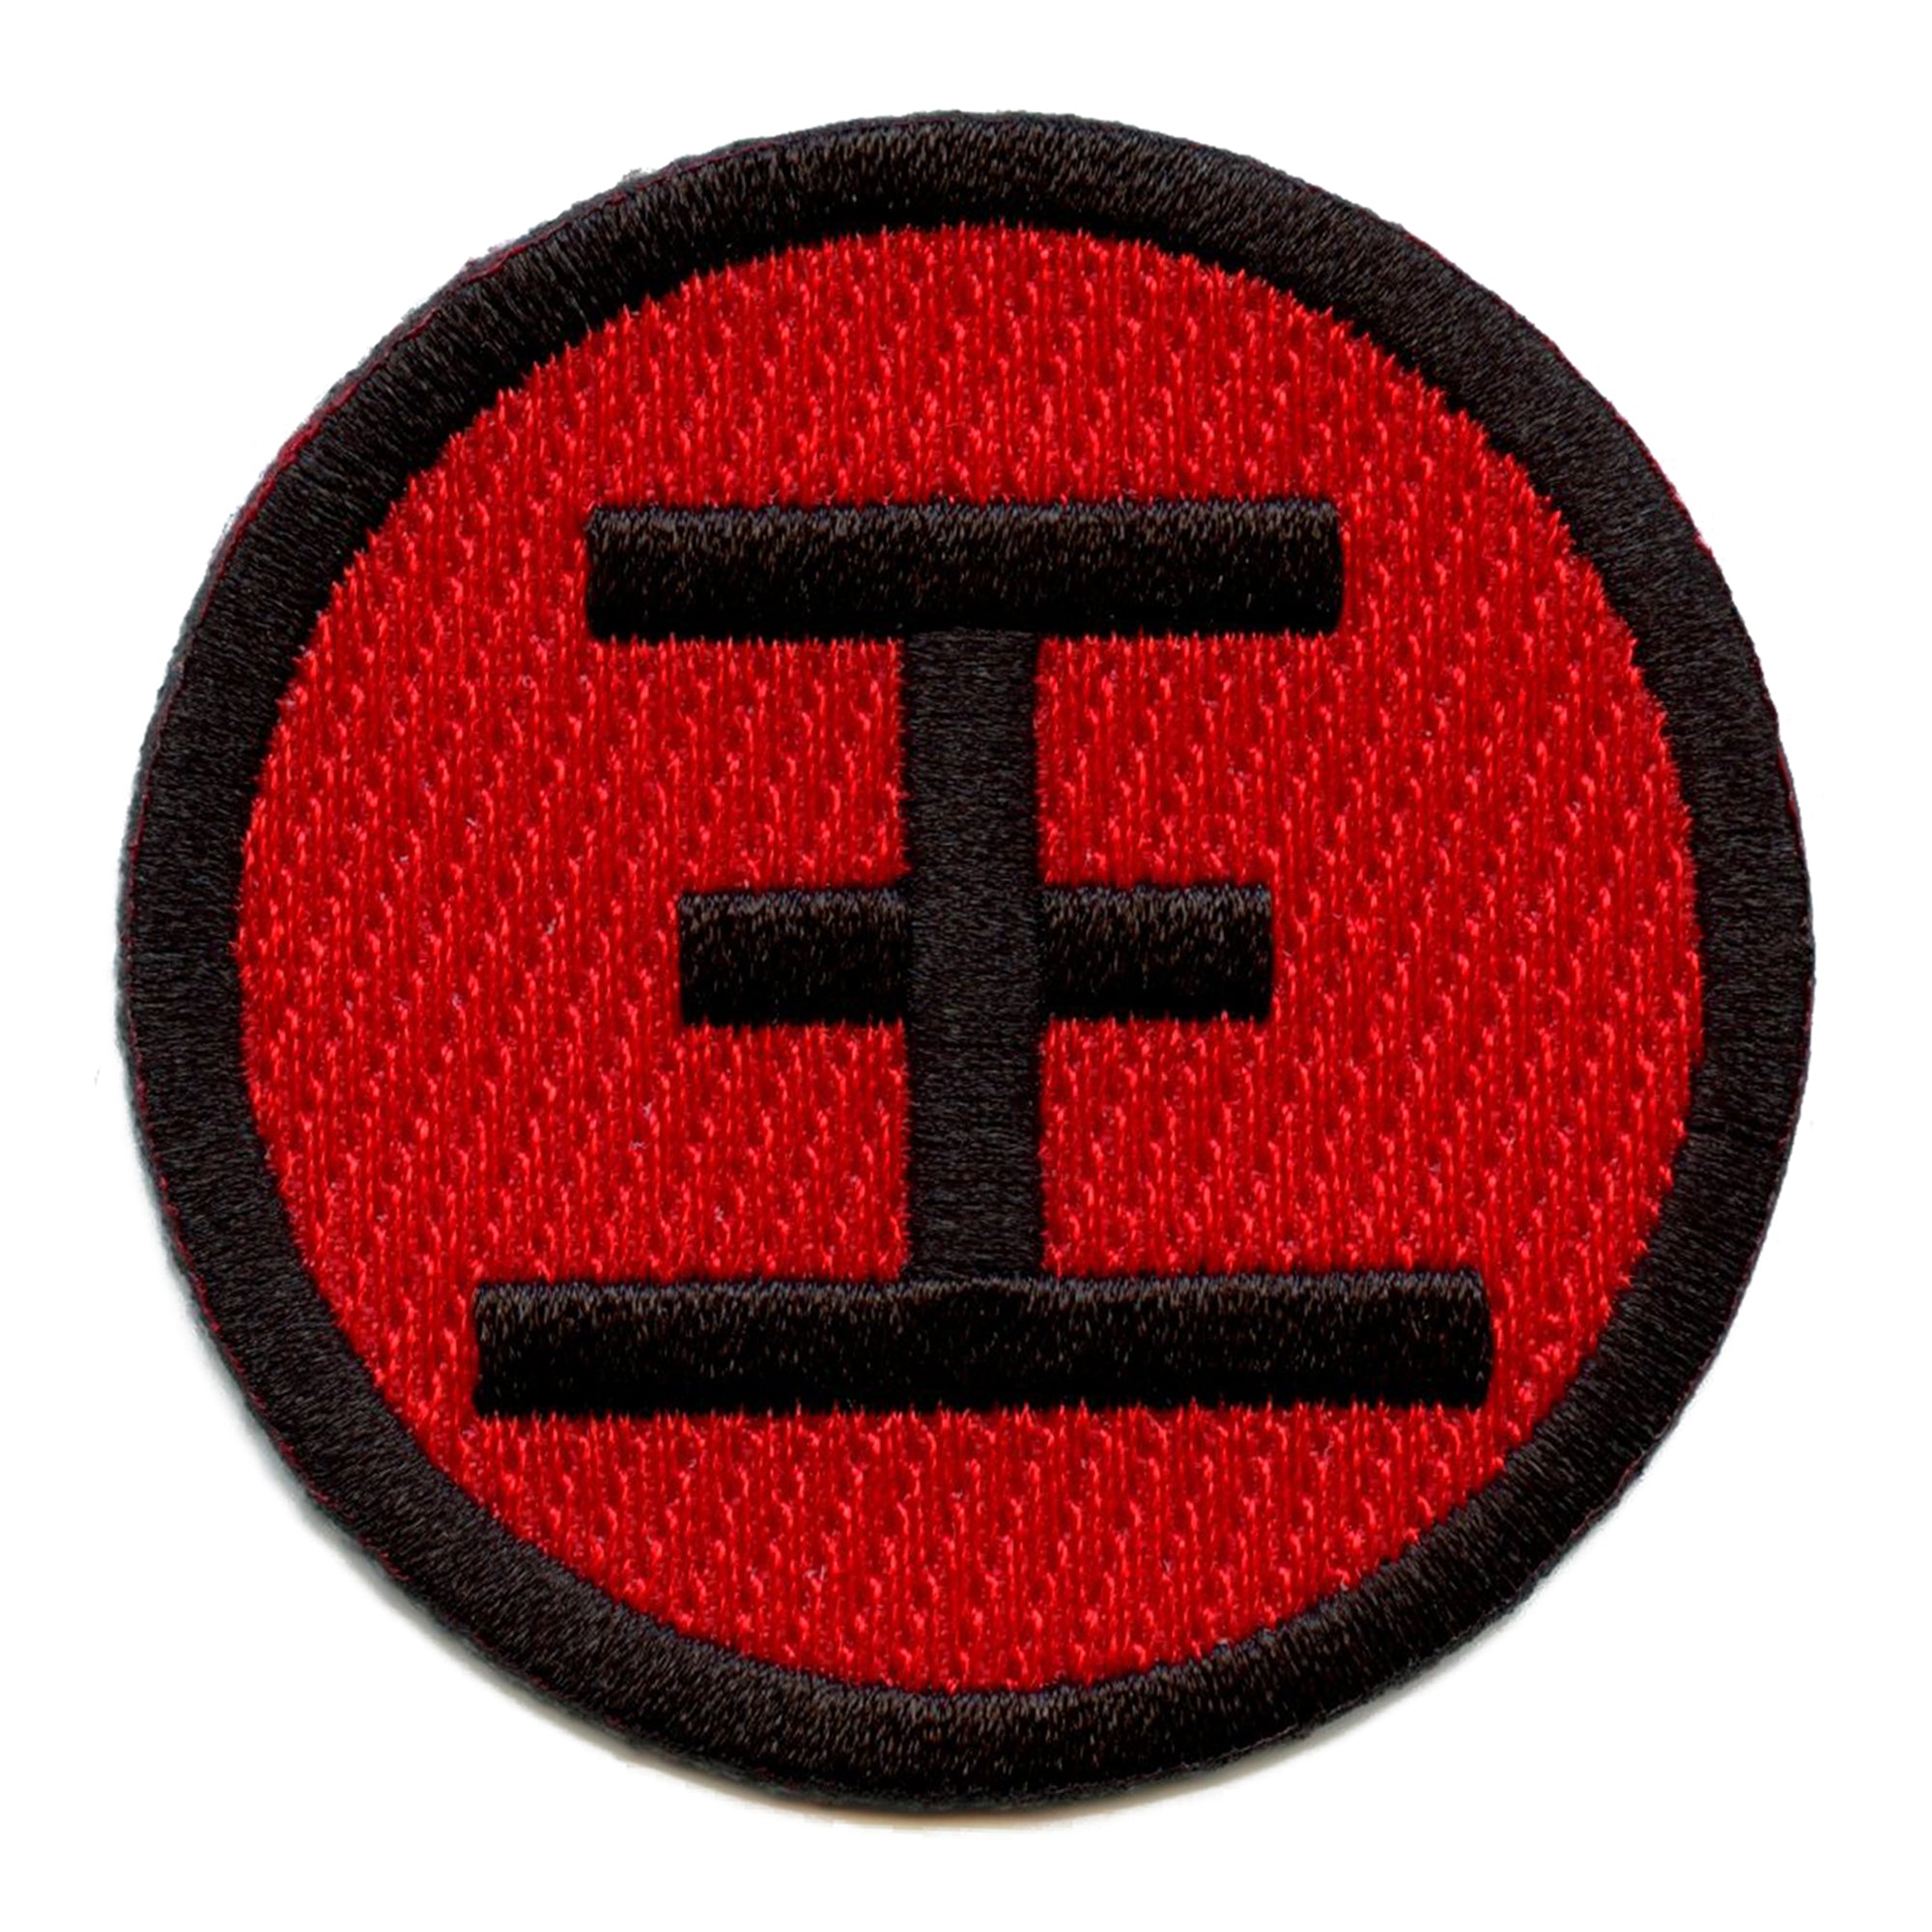 yu yu hakusho logo